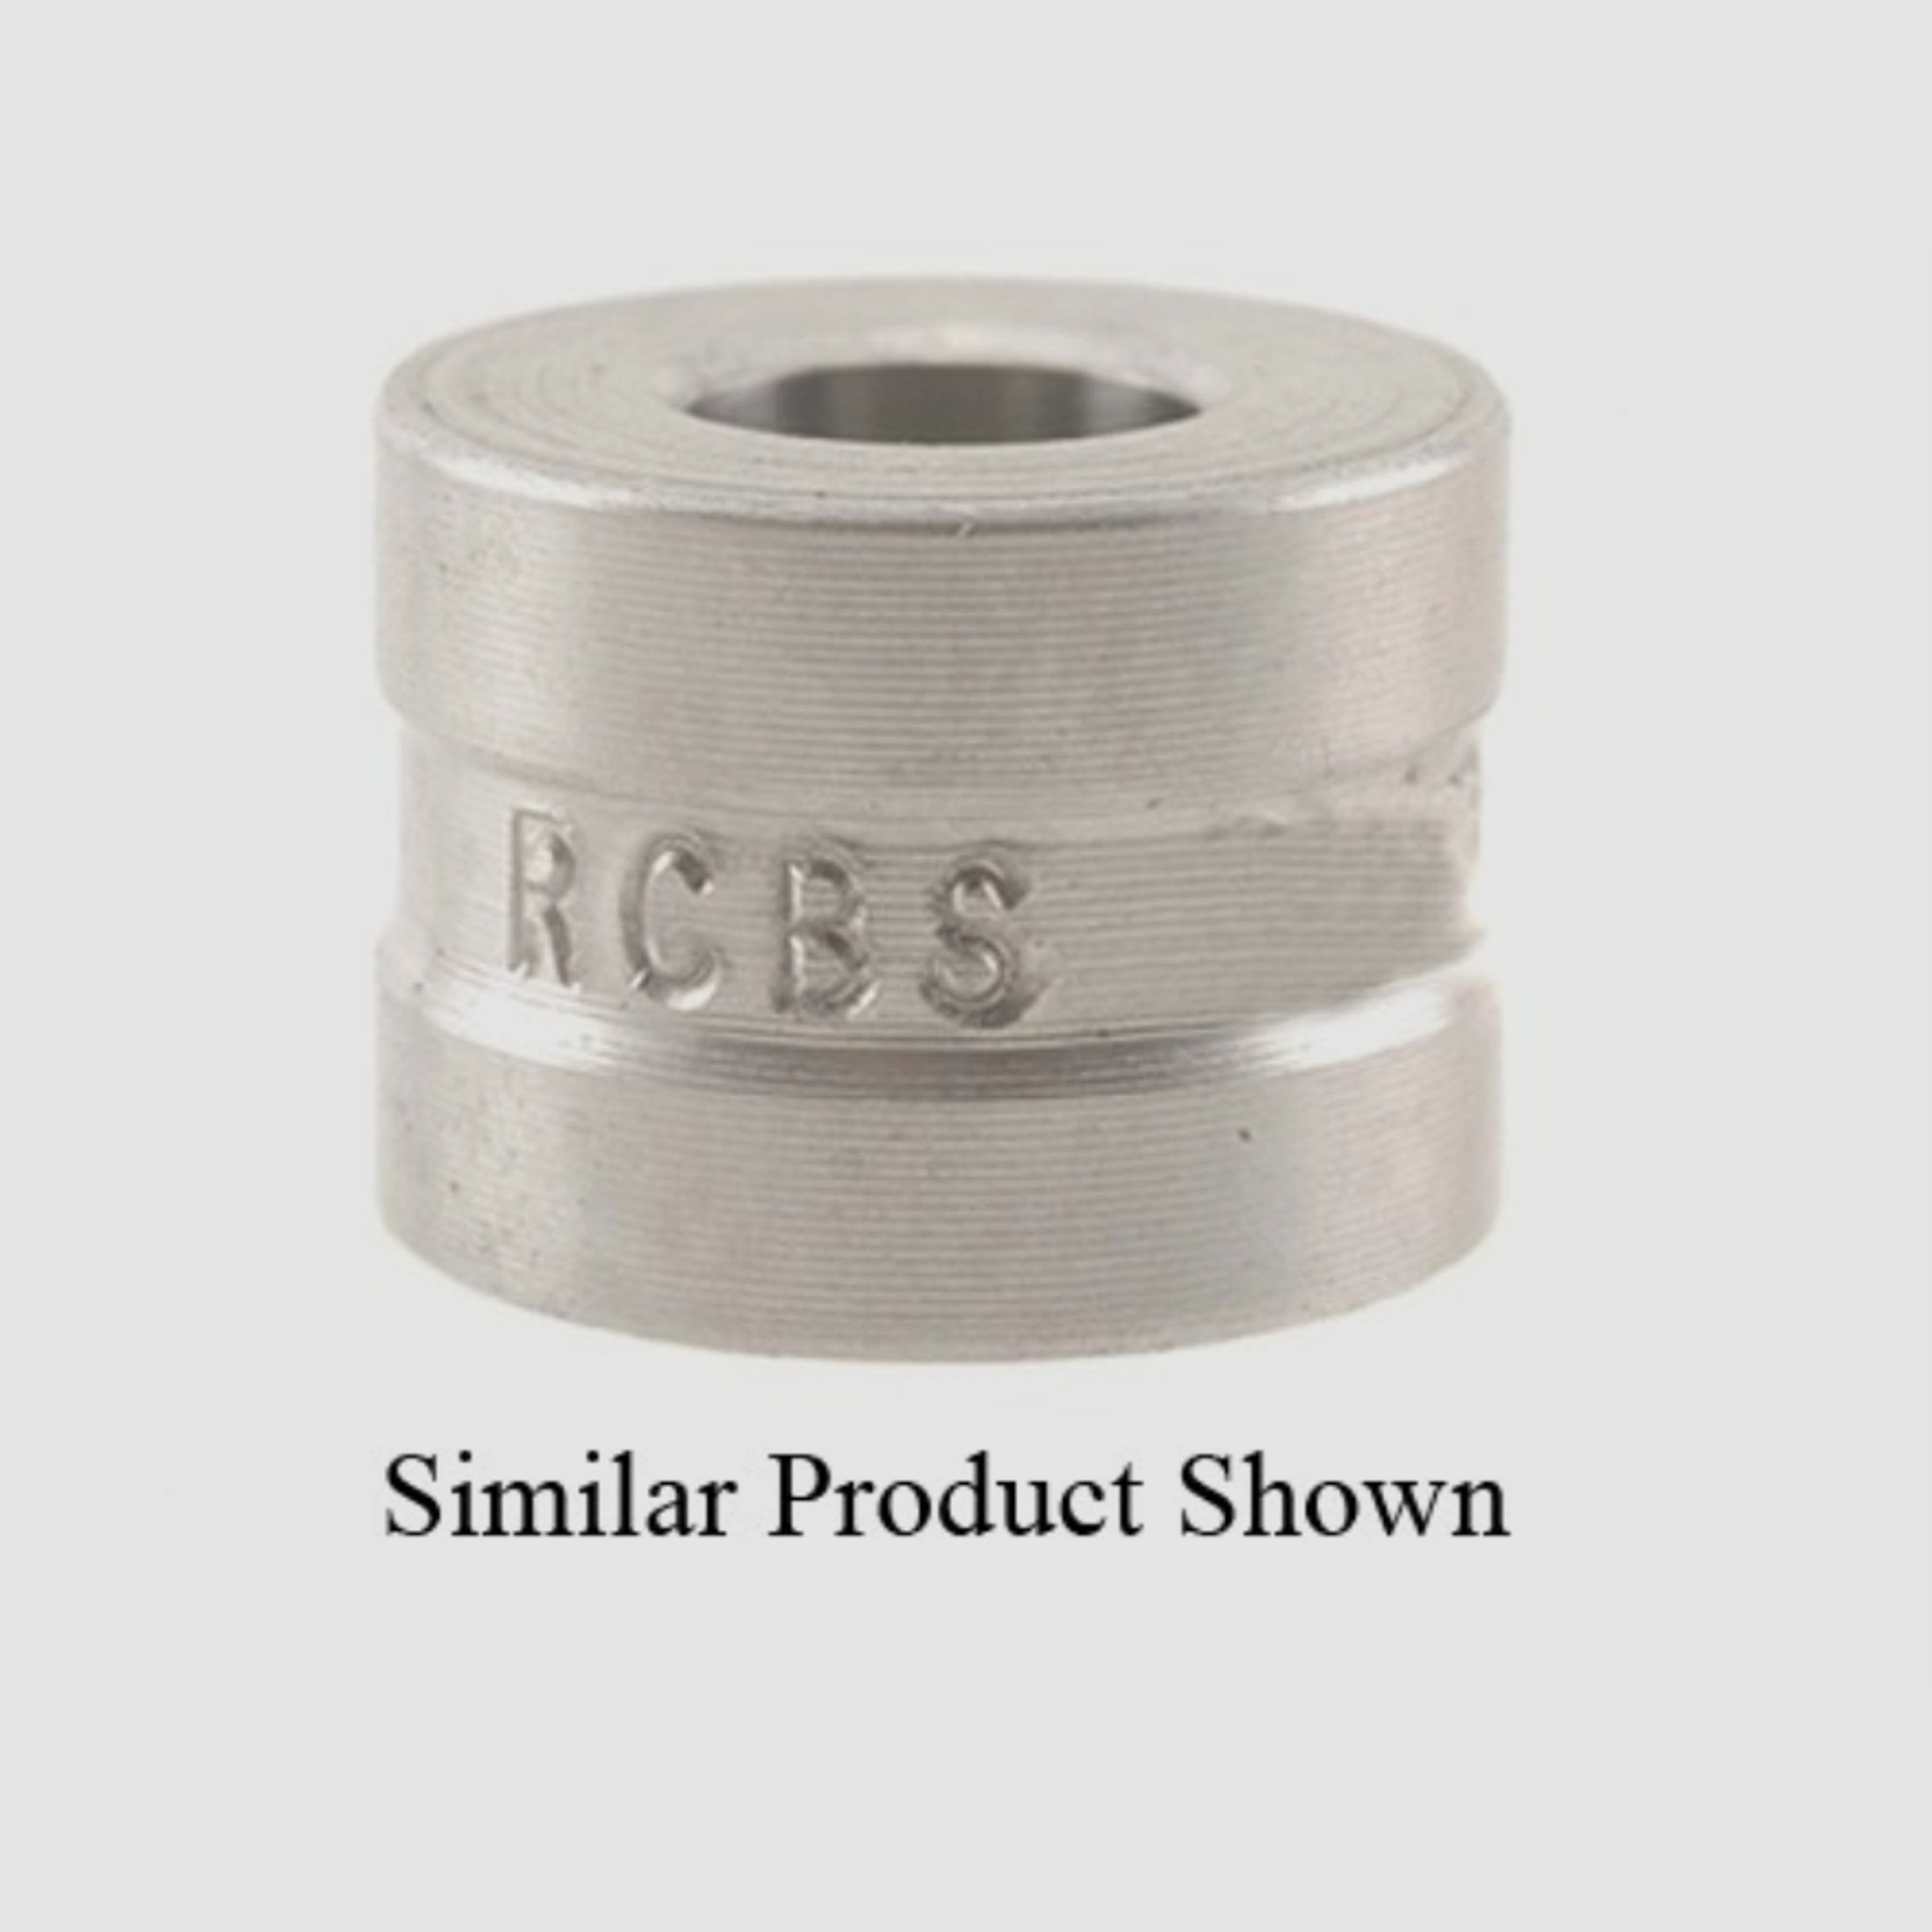 RCBS Steel Neck Sizer Die Bushing .333